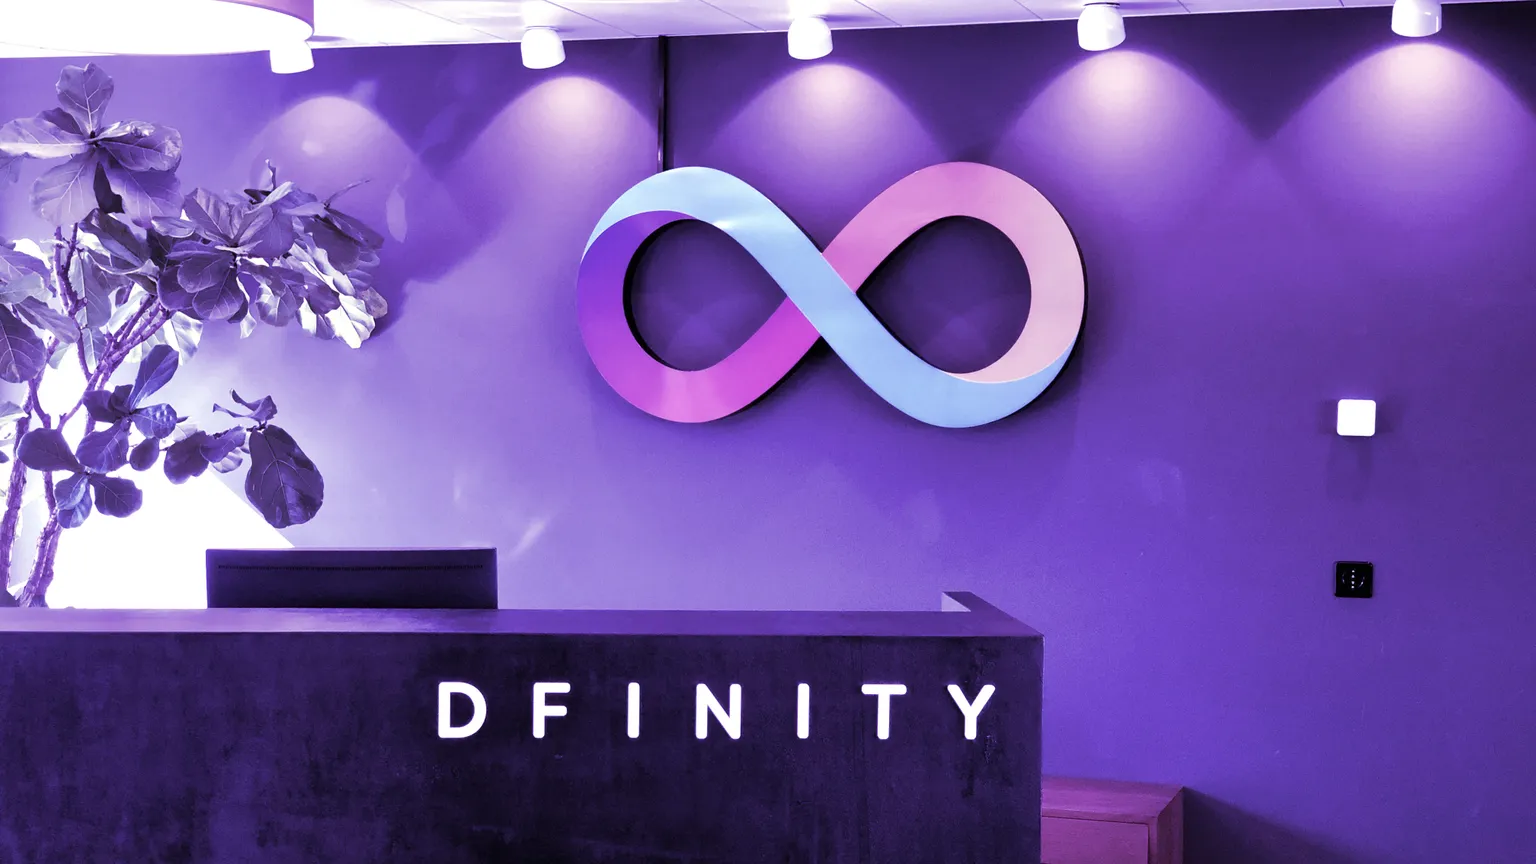 Dfinity dará acceso a su plataforma a los desarrolladores de terceros el 1 de julio. Imagen: Dfinity